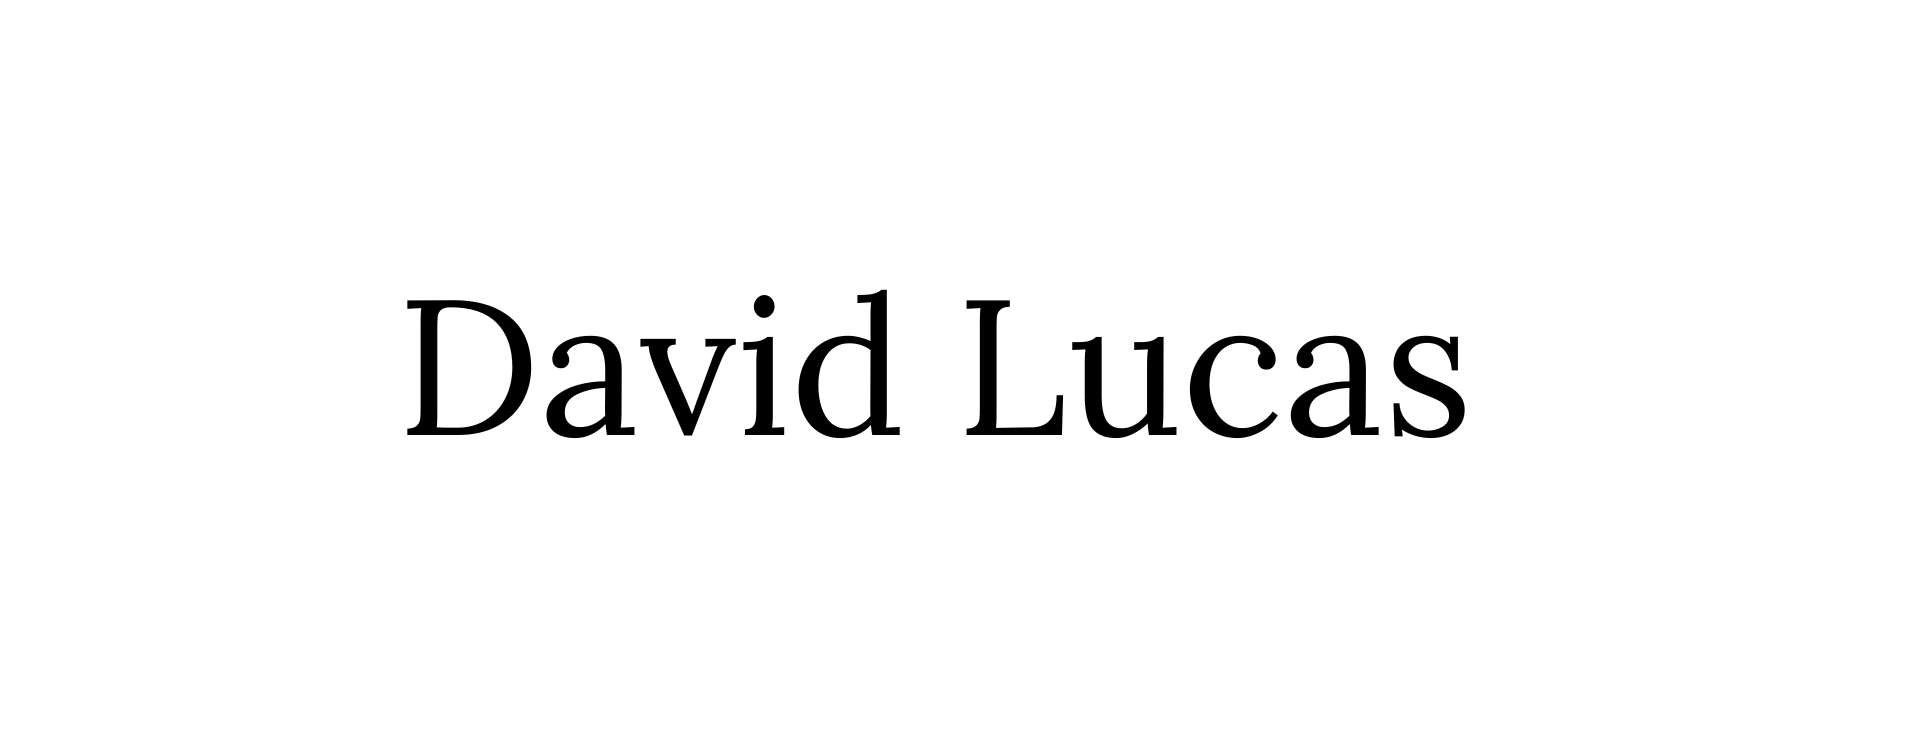 DAVID LUCAS